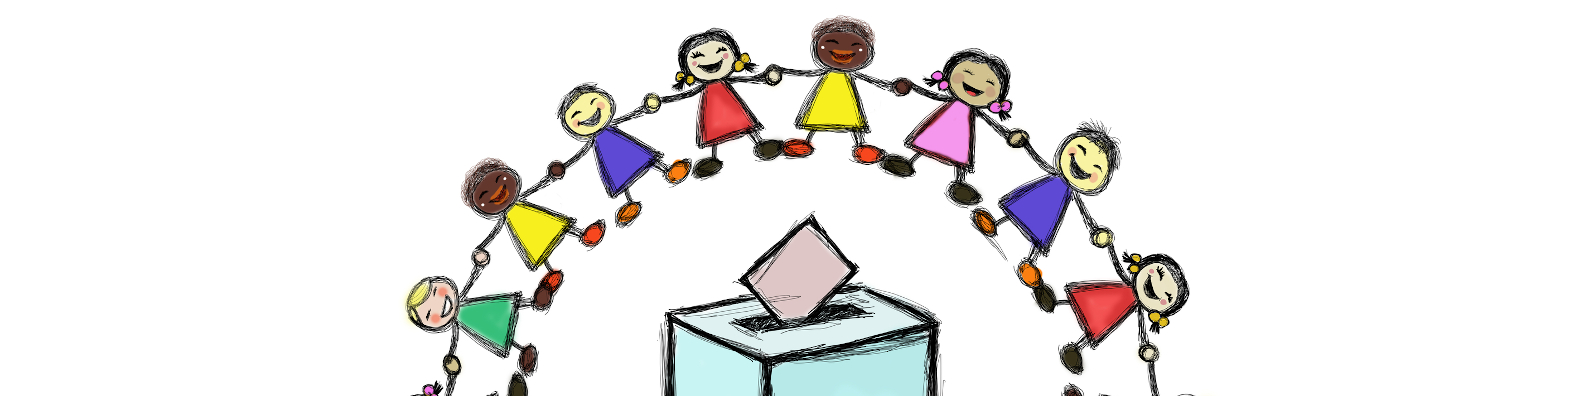 Zeichnung: Kinder tanzen um eine Wahlurne herum